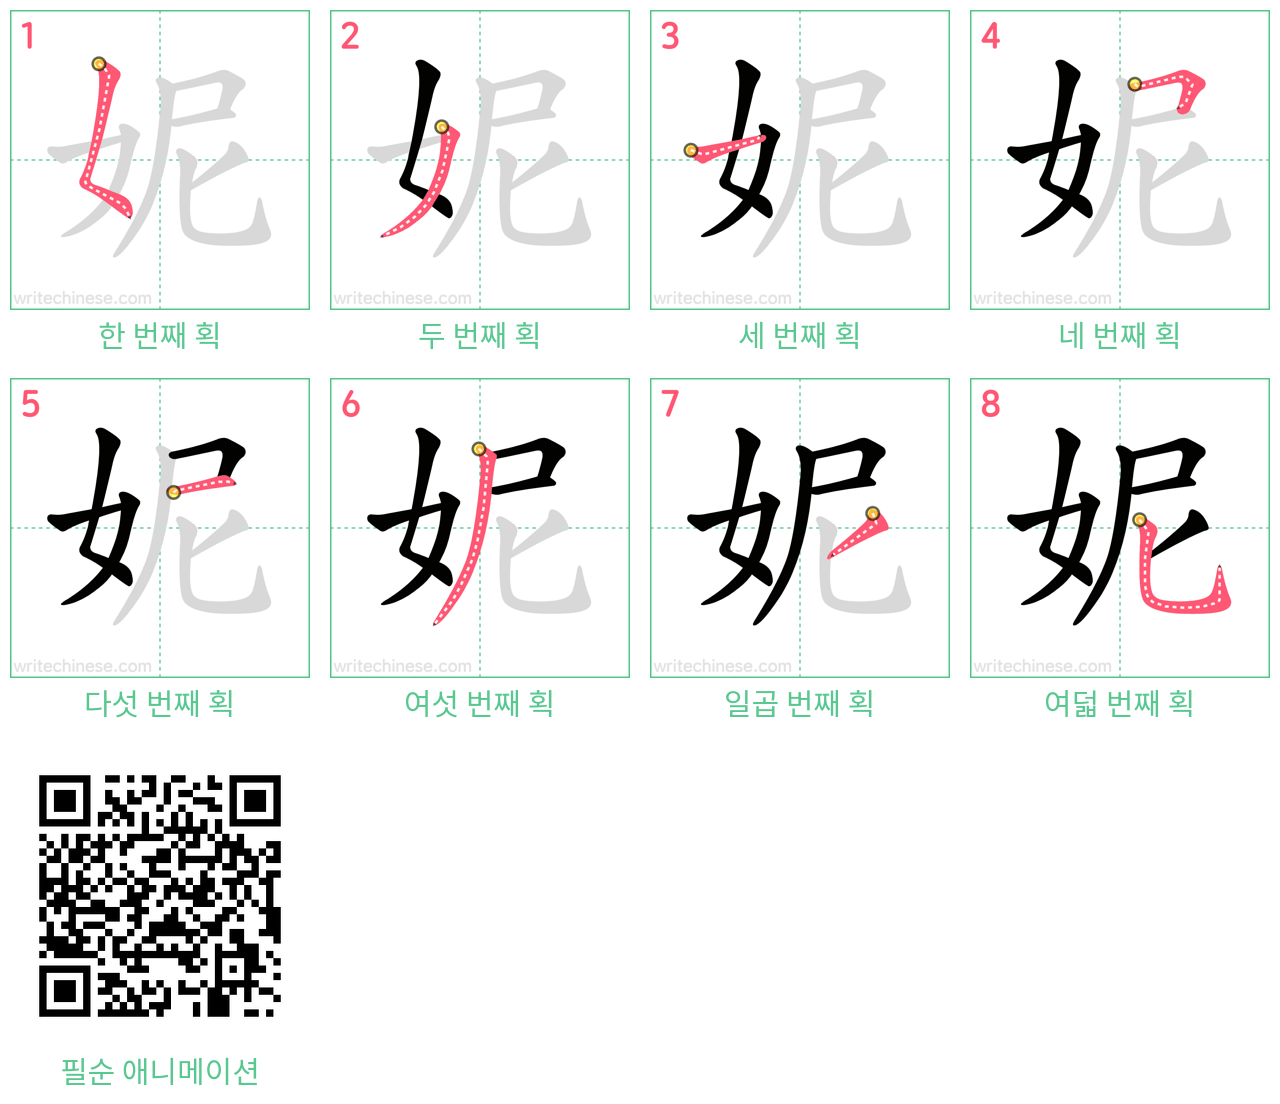 妮 step-by-step stroke order diagrams